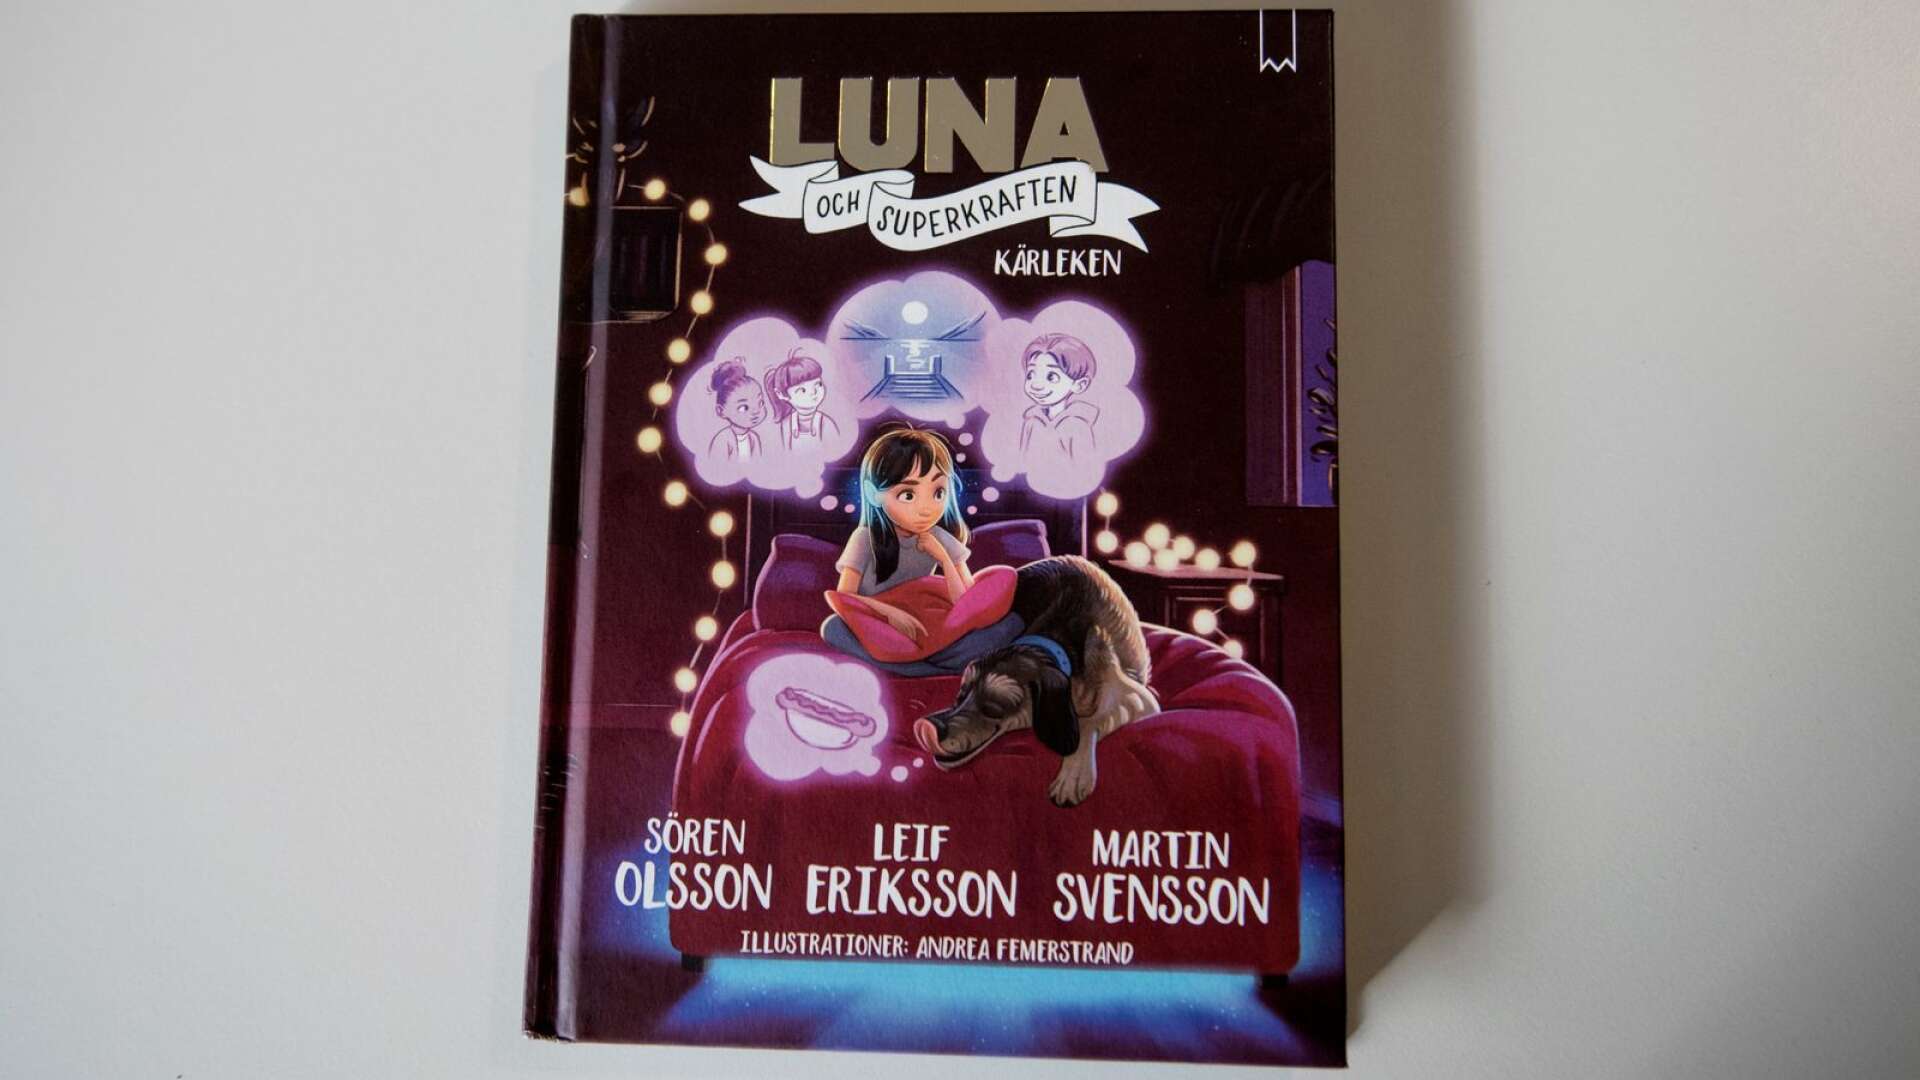 Luna och superkraften: Kärleken är bok nummer två i bokserien. Den nioåriga Luna upptäcker i första boken att hon har en superkraft, i bok nummer två får hon tacklas med nya känslor.